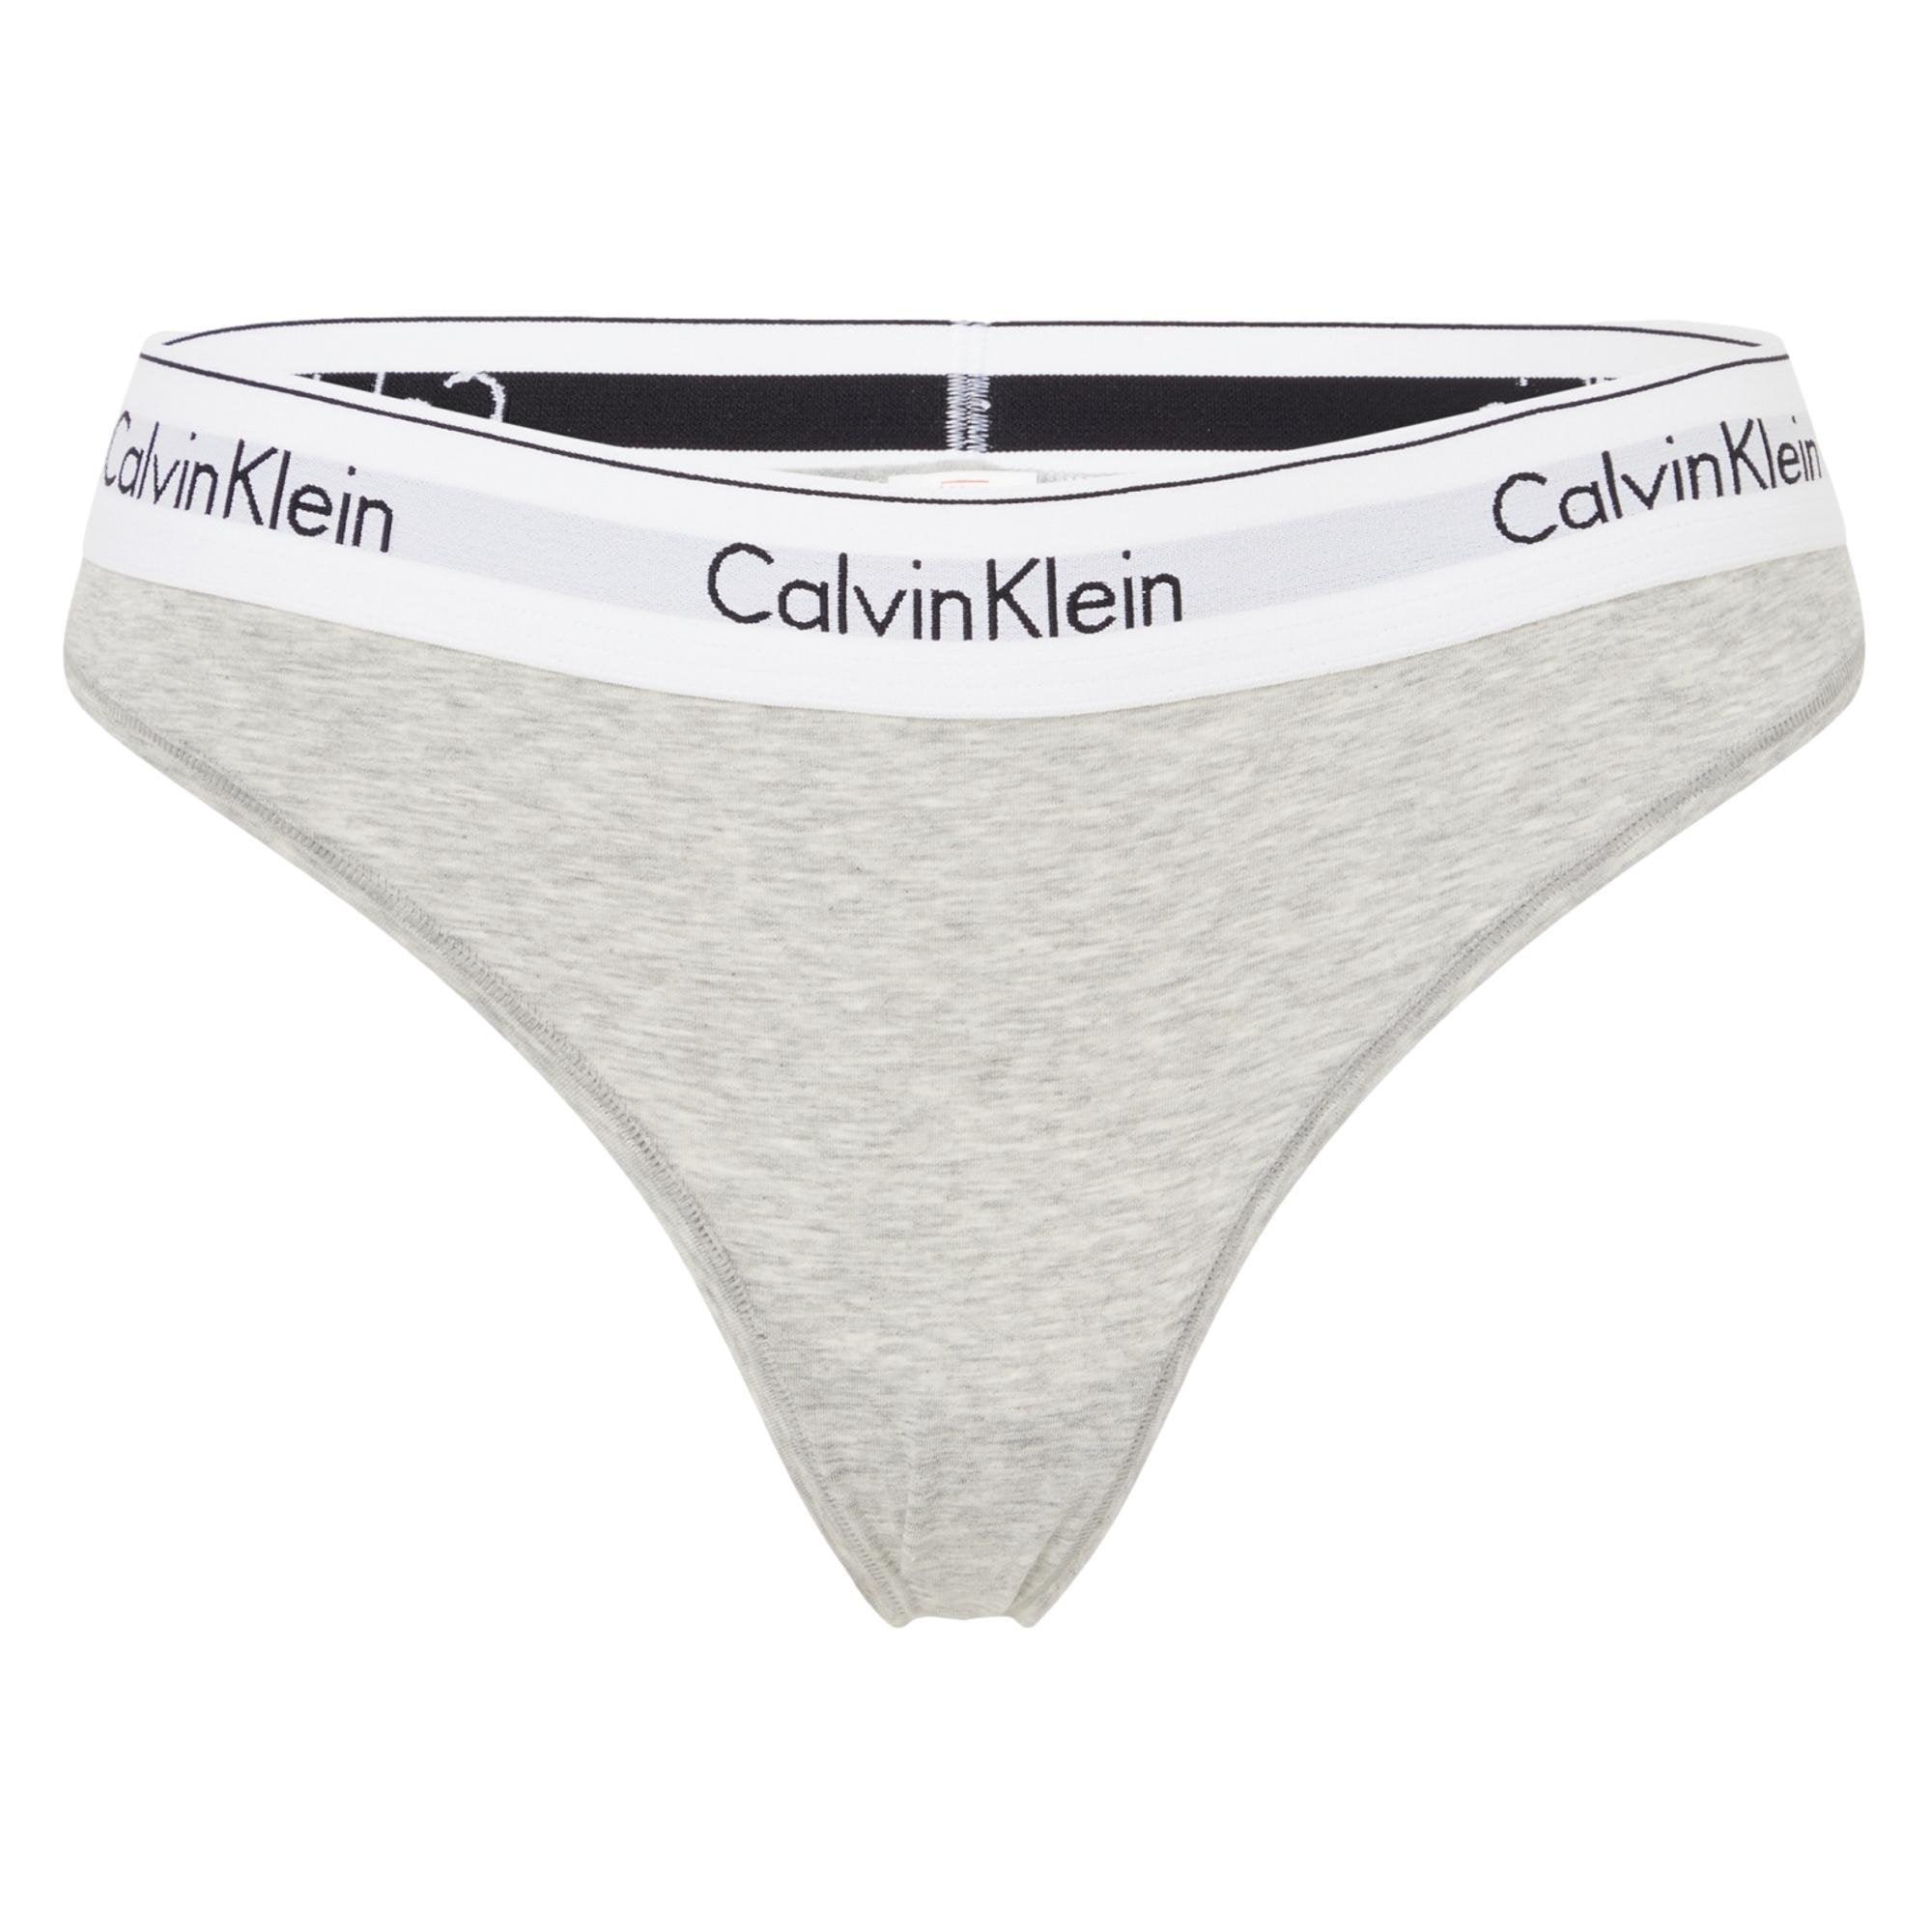 Calvin Klein Women's Brazilian Cotton Stretch Briefs, Grey, XL